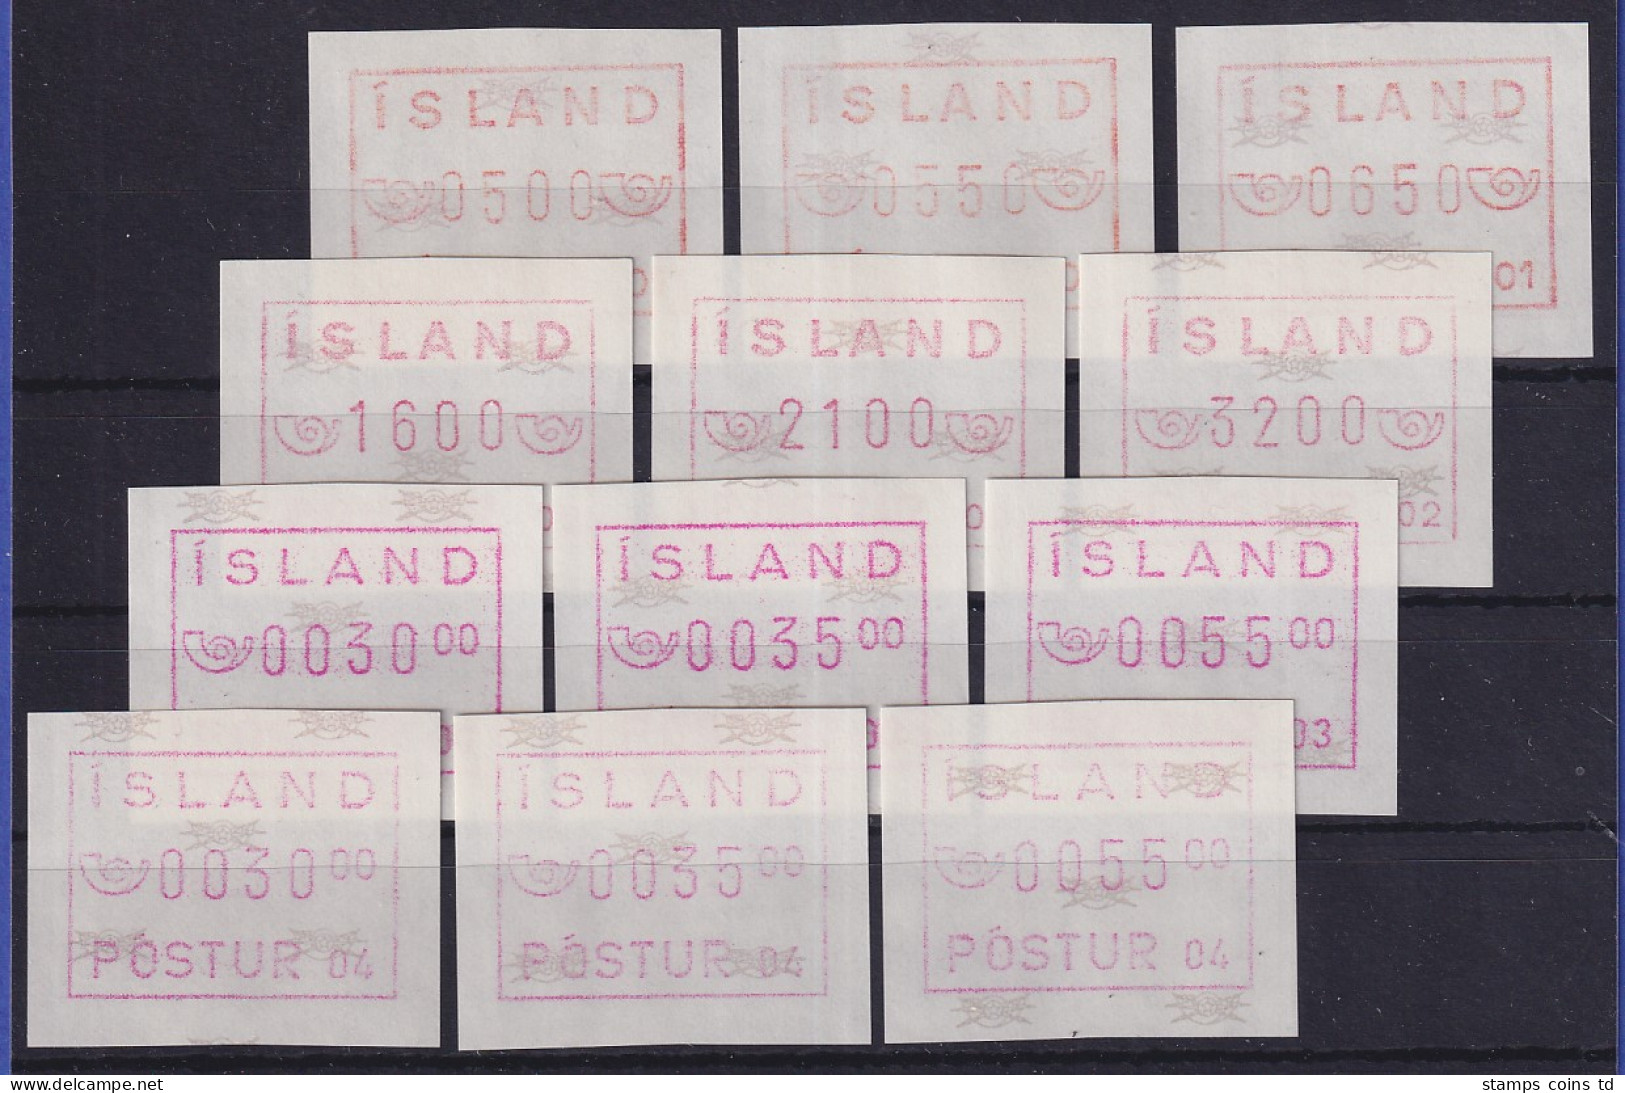 Kleine Sammlung Island-ATM Komplett, Je Ein Satz 3 Werte Von Den Aut.-Nr. 01-04  - Automatenmarken (Frama)